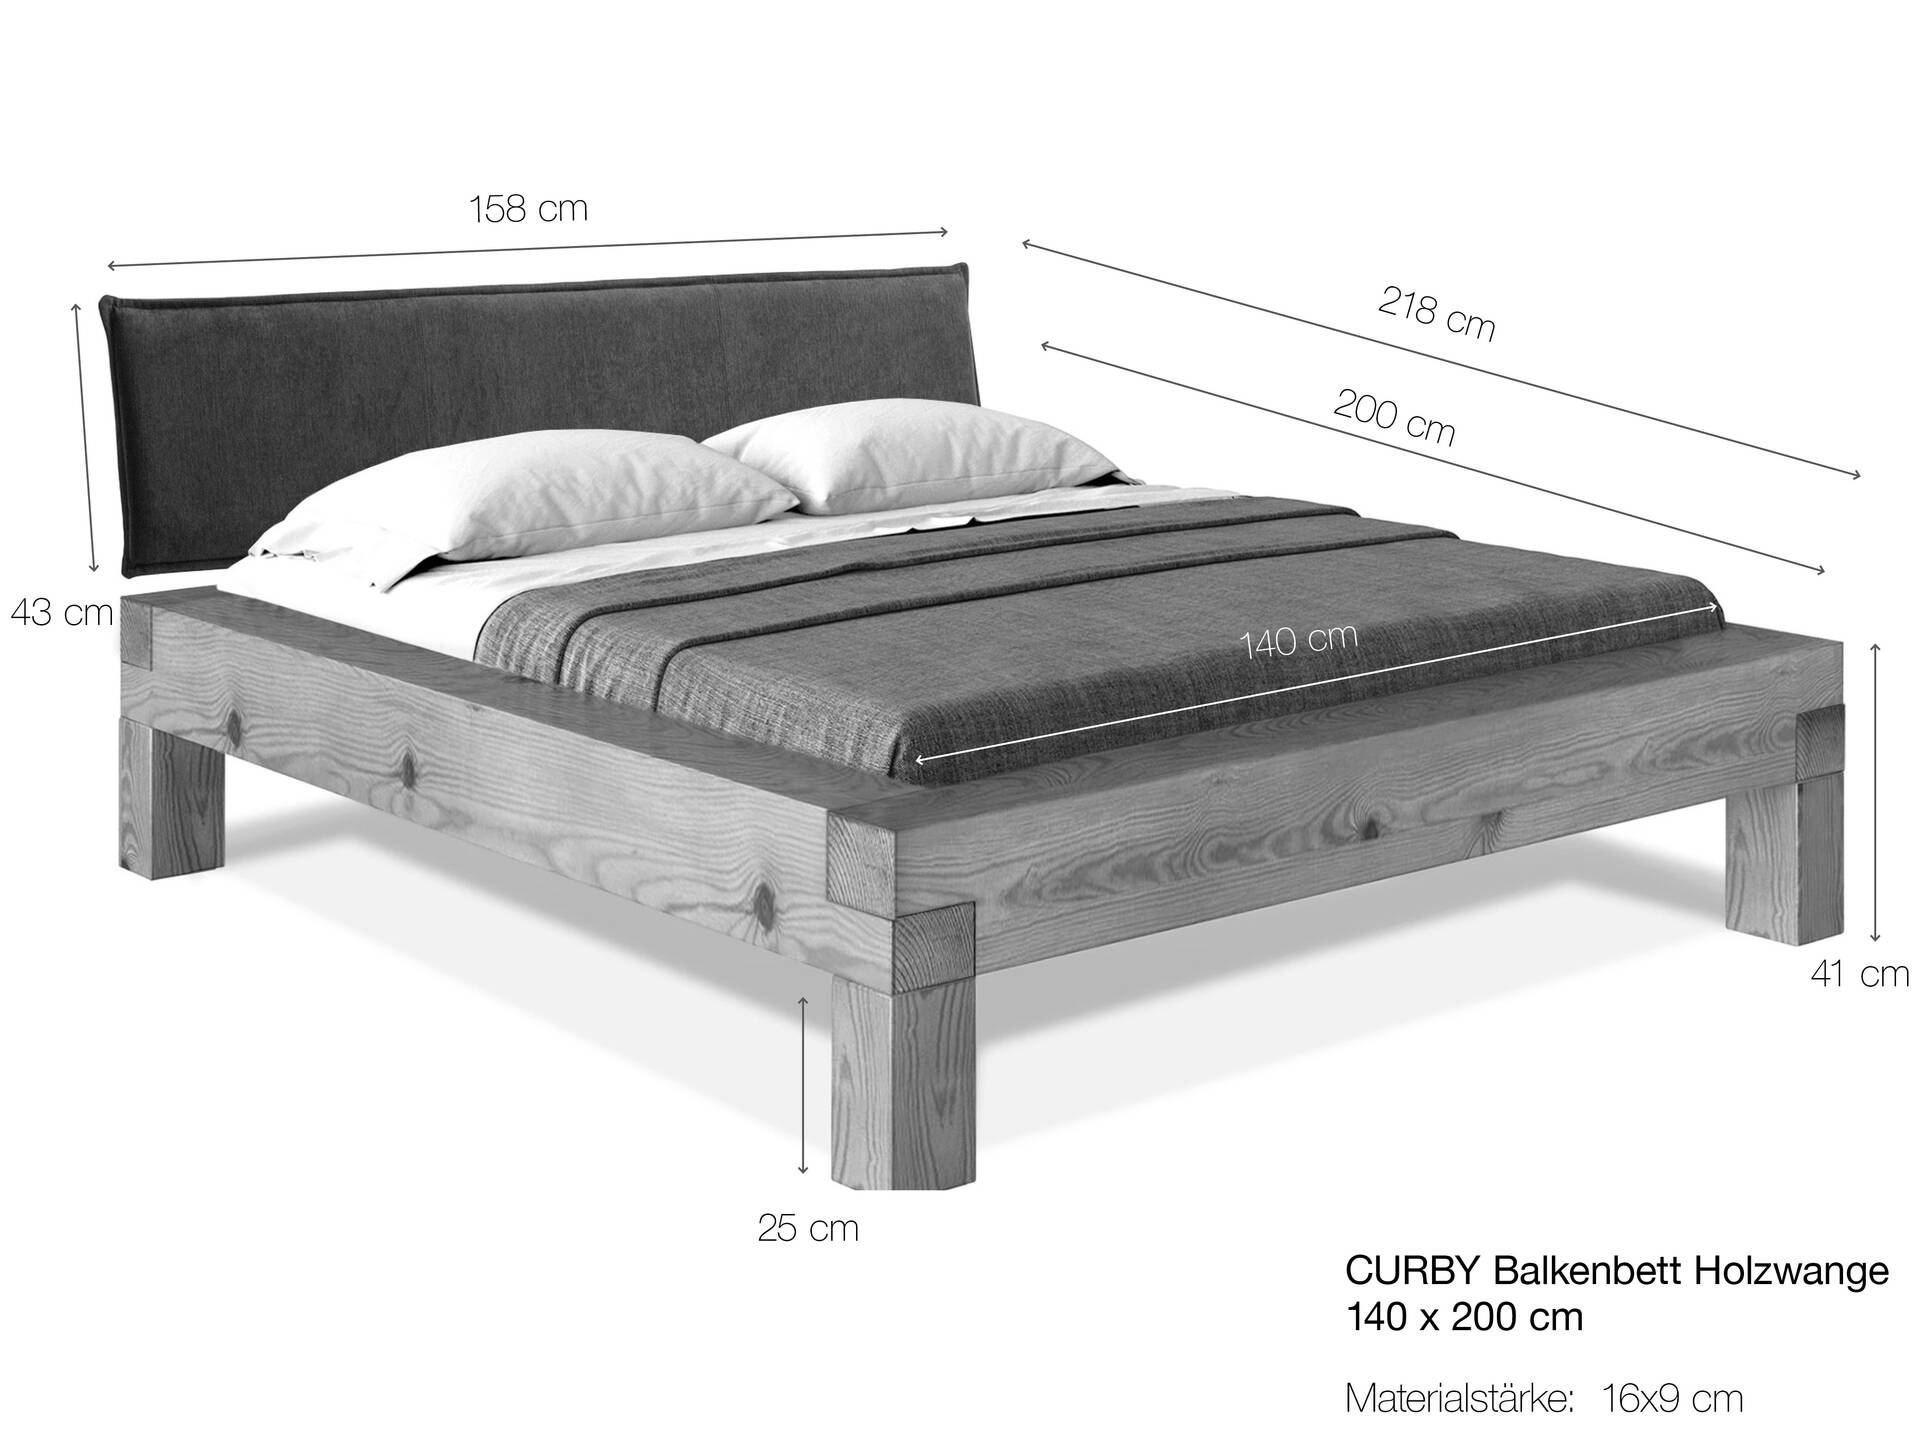 CURBY 4-Fuß-Balkenbett mit Polster-Kopfteil, Material Massivholz, Thermo-Fichte 140 x 200 cm | natur | Stoff Anthrazit | Standardhöhe